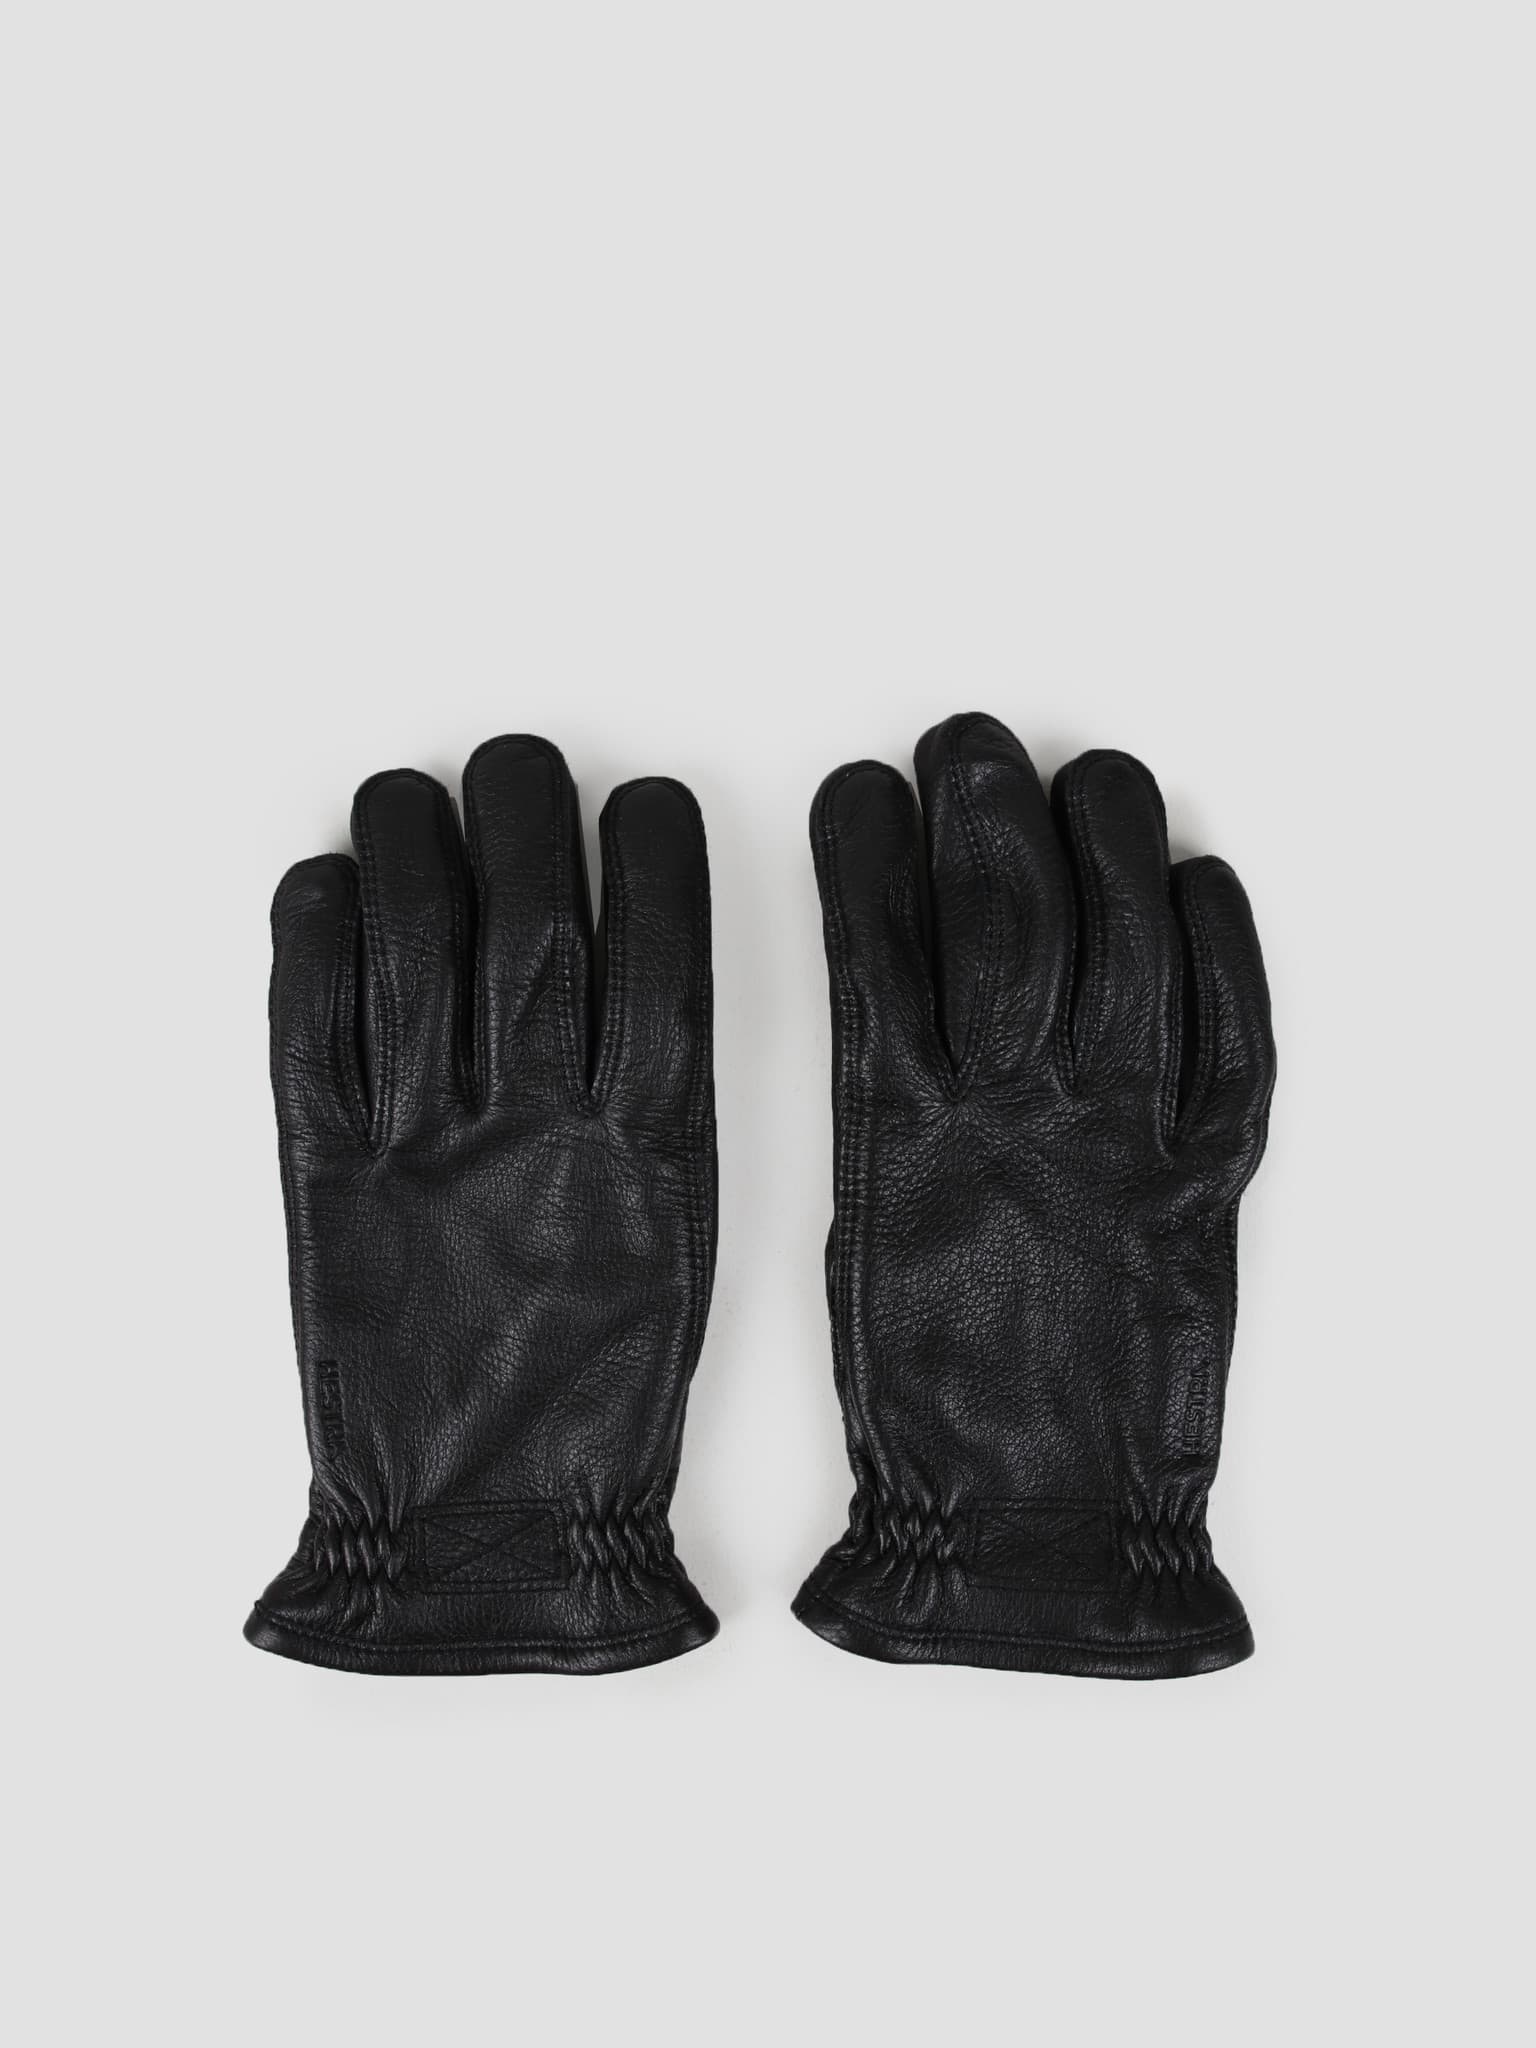 Särna Glove Black 20890